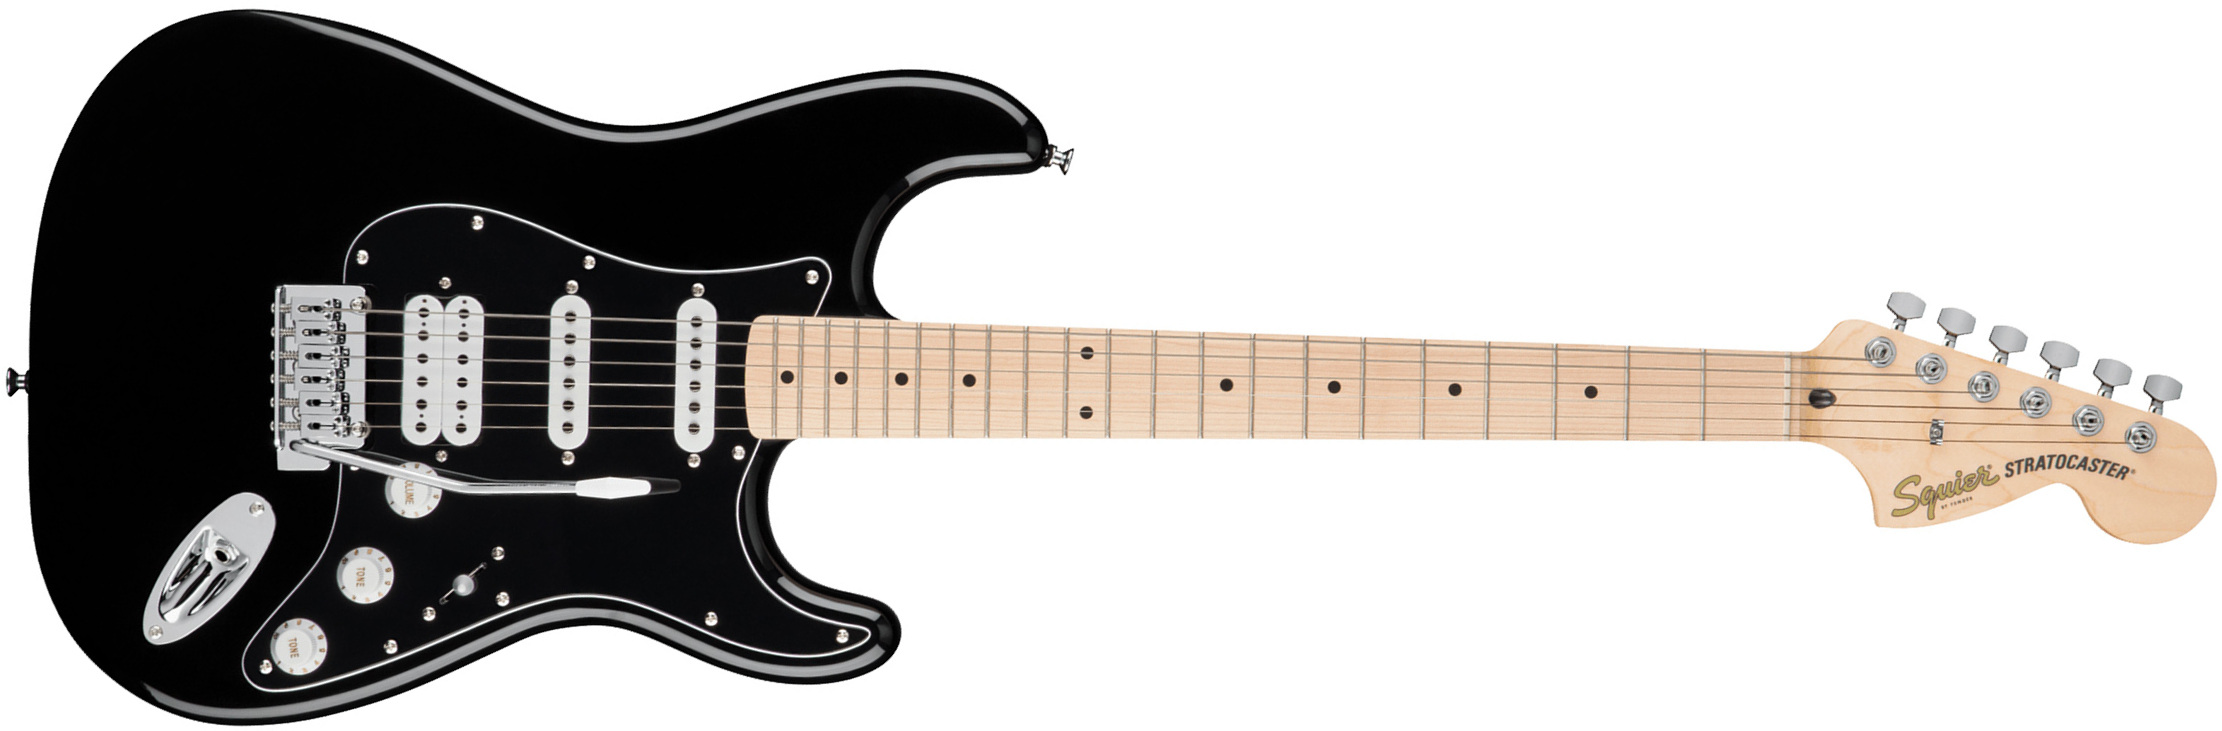 Squier Strat Affinity Black Pickguard Fsr Ltd Hss Trem Lau - Black - E-Gitarre in Str-Form - Main picture